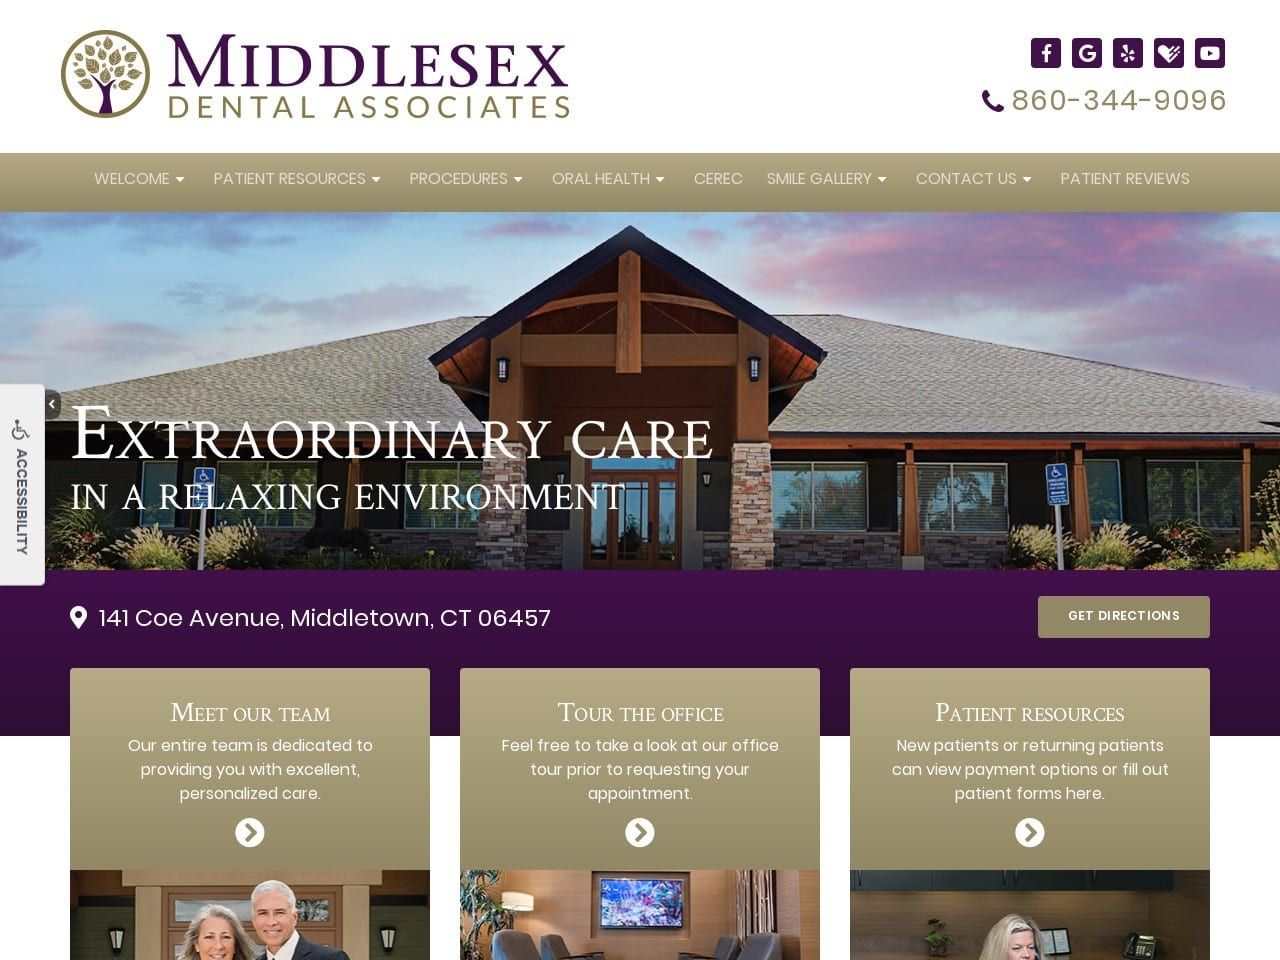 Middlesex Dental Associates Website Screenshot from middlesexdentalassociates.com